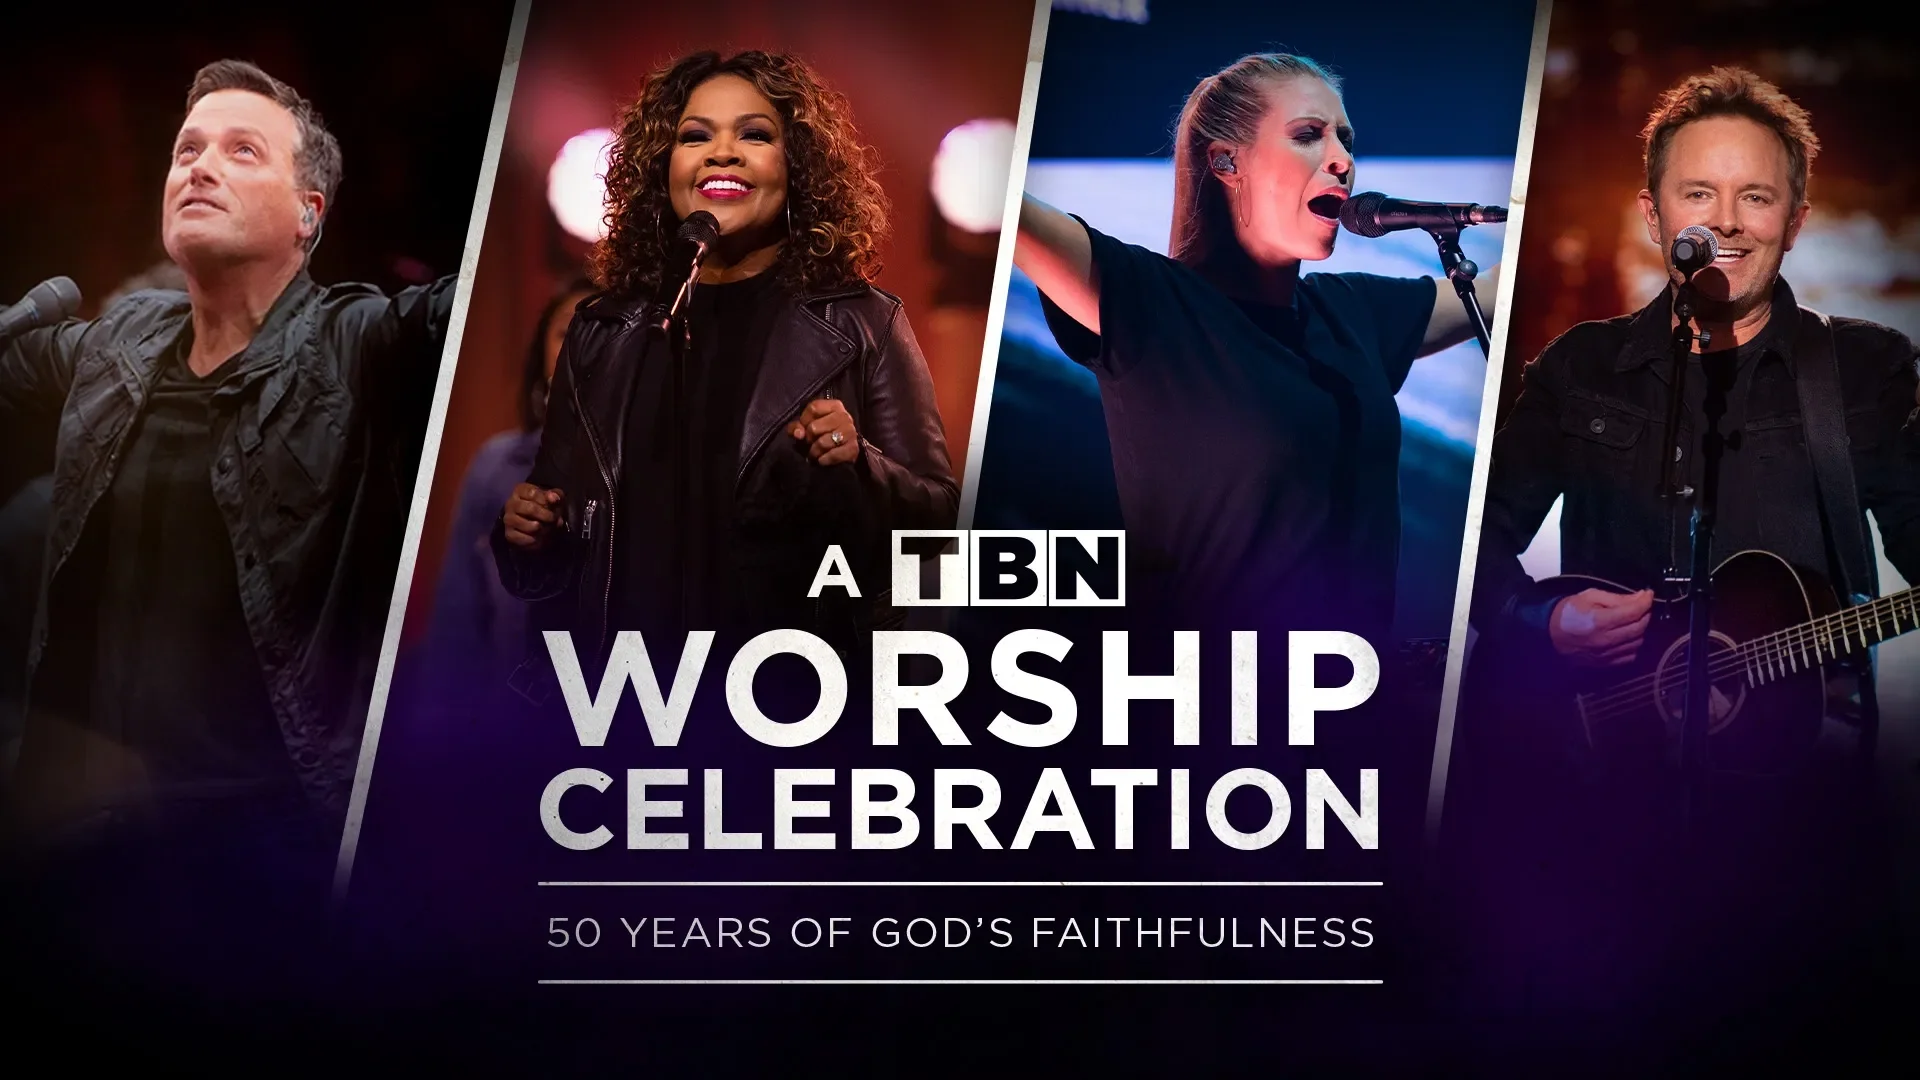  A Night of Worship Celebrating God’s Faithfulness Over 50 Years